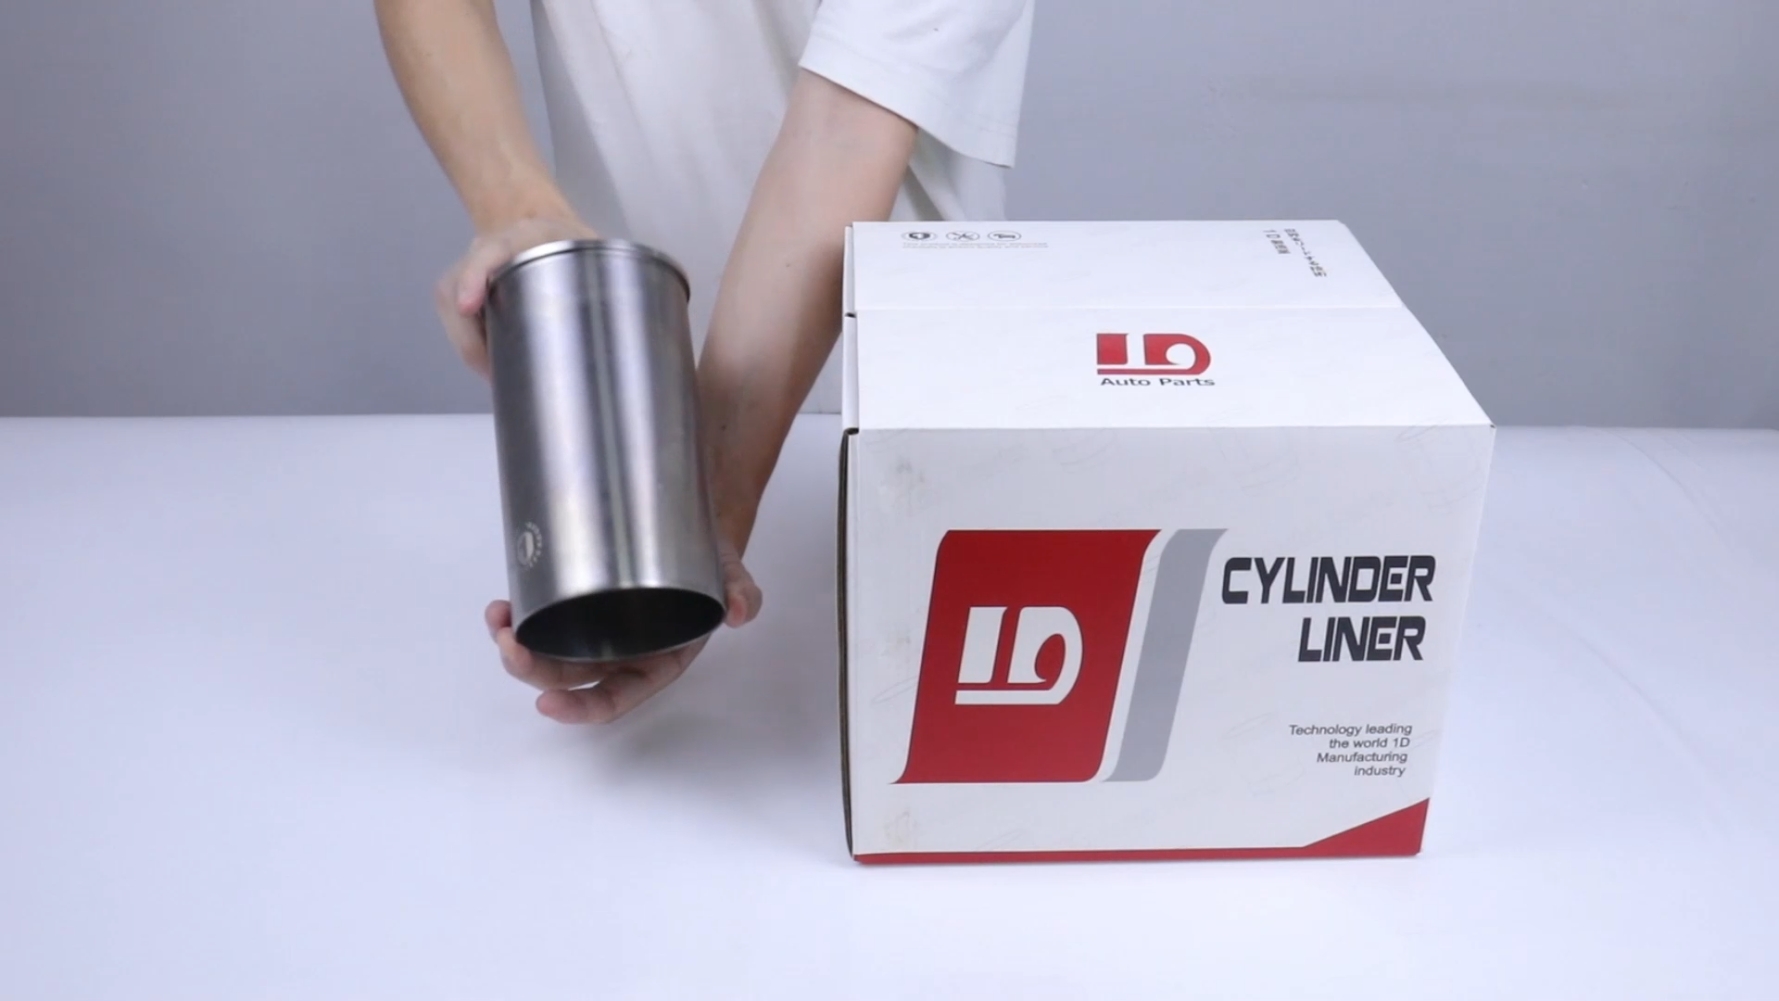 2KD cylinder liner Unboxing inspection video